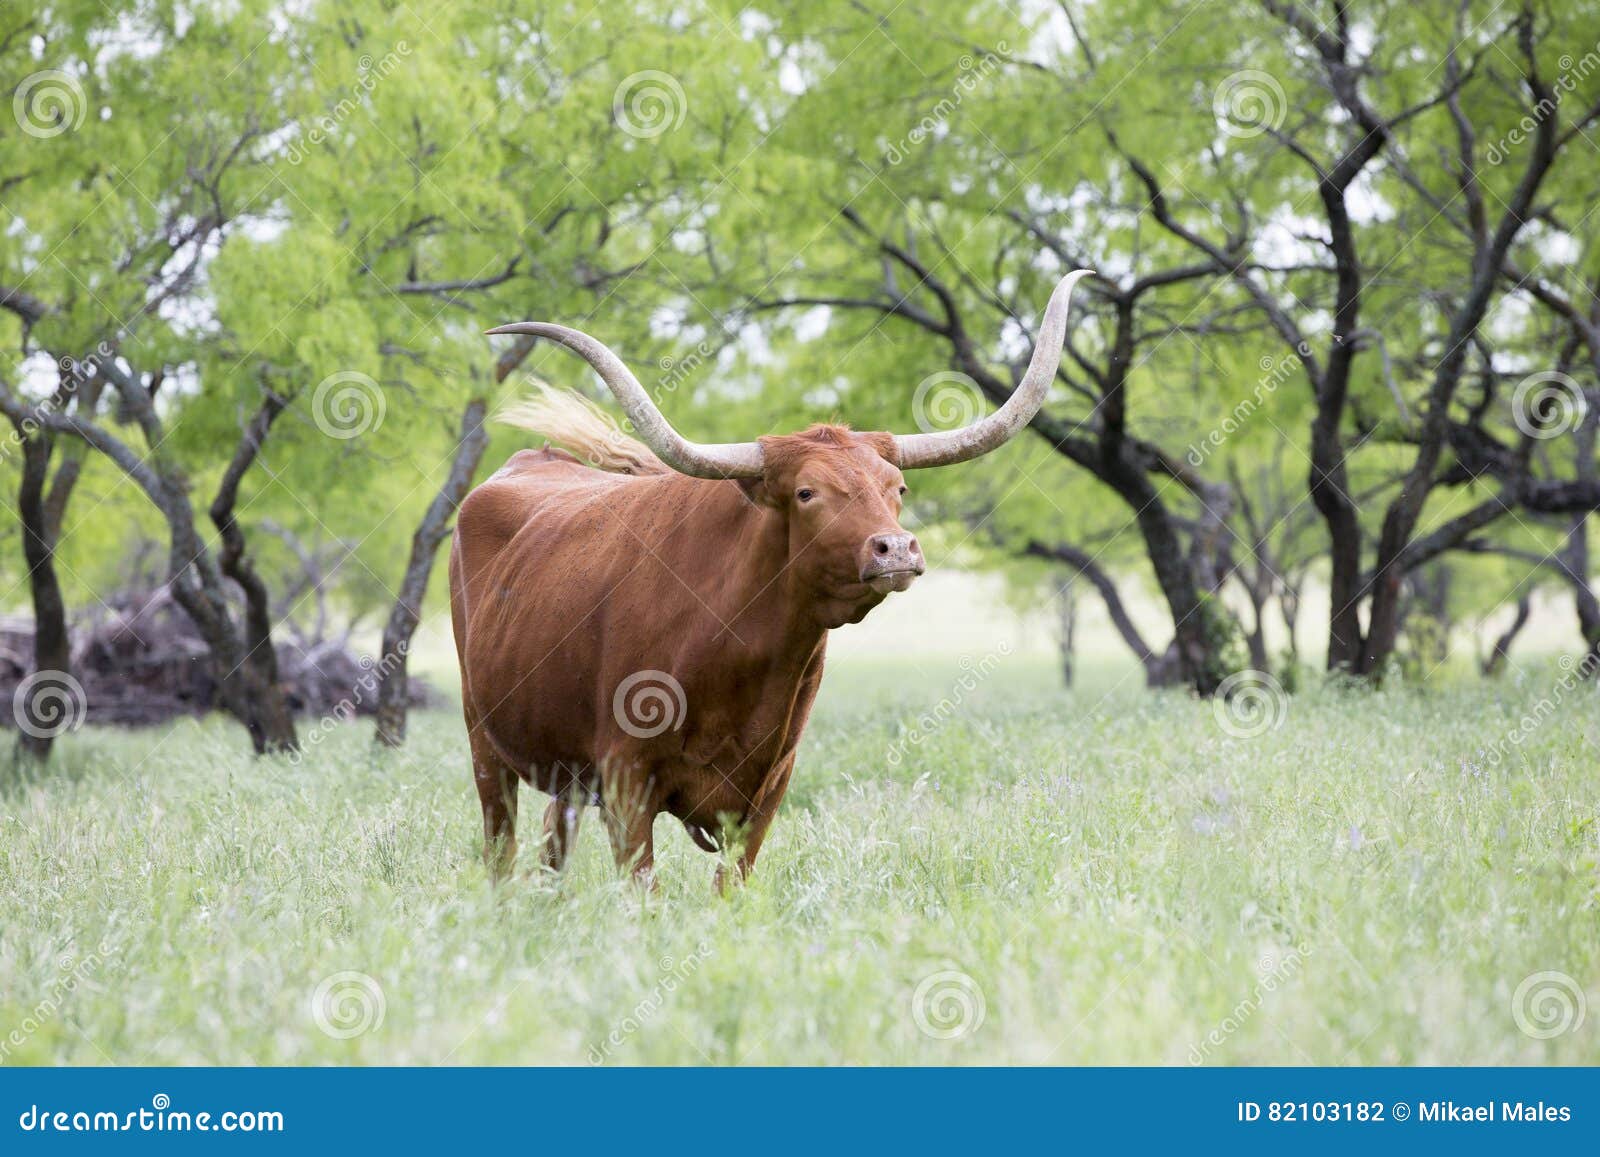 huge texas longhorn